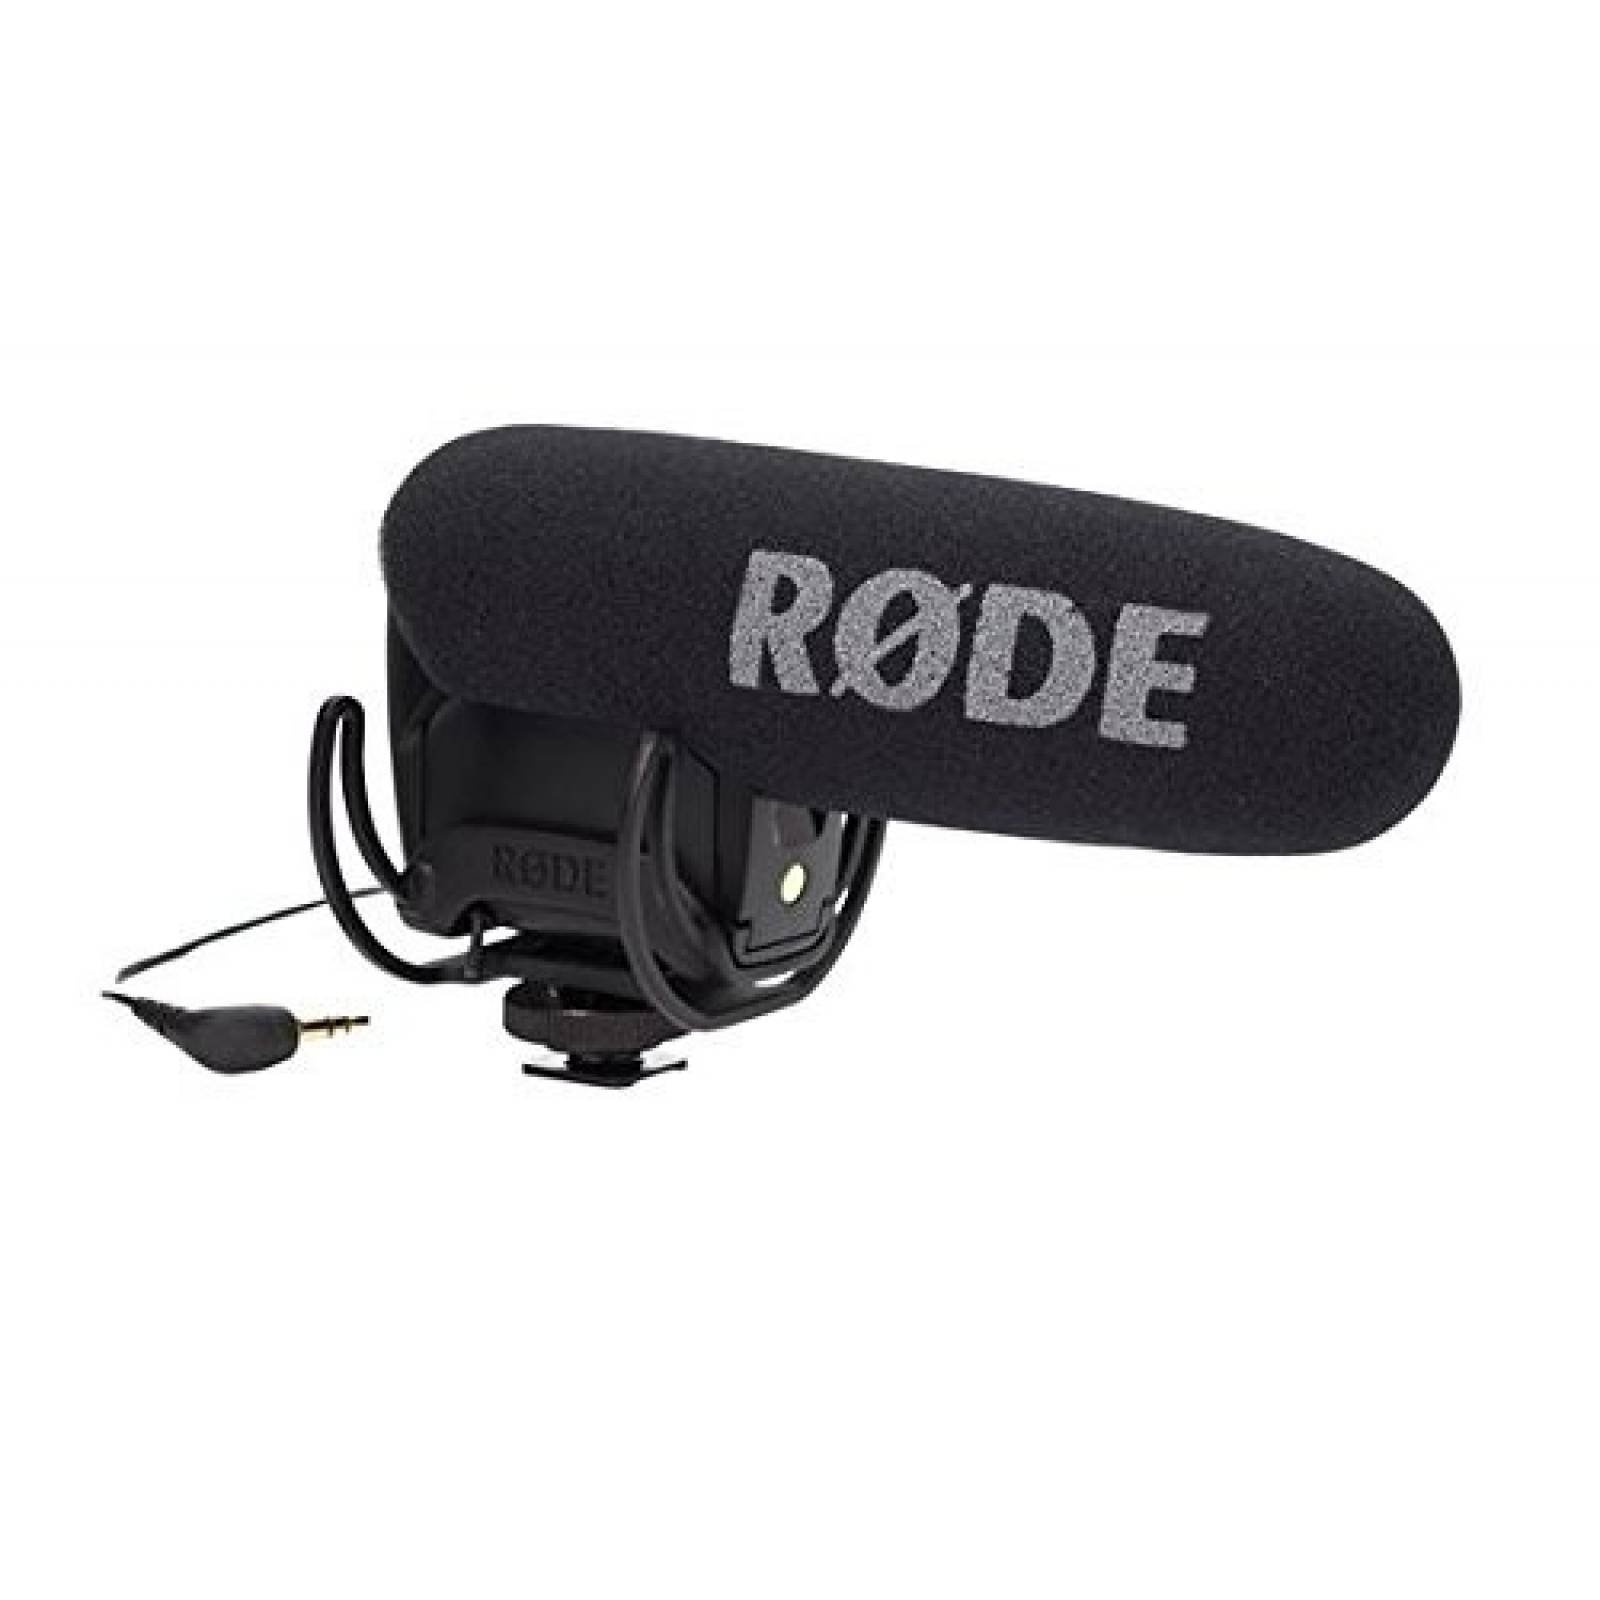 Micrófono direccional compacto Rode para cámara -Negro